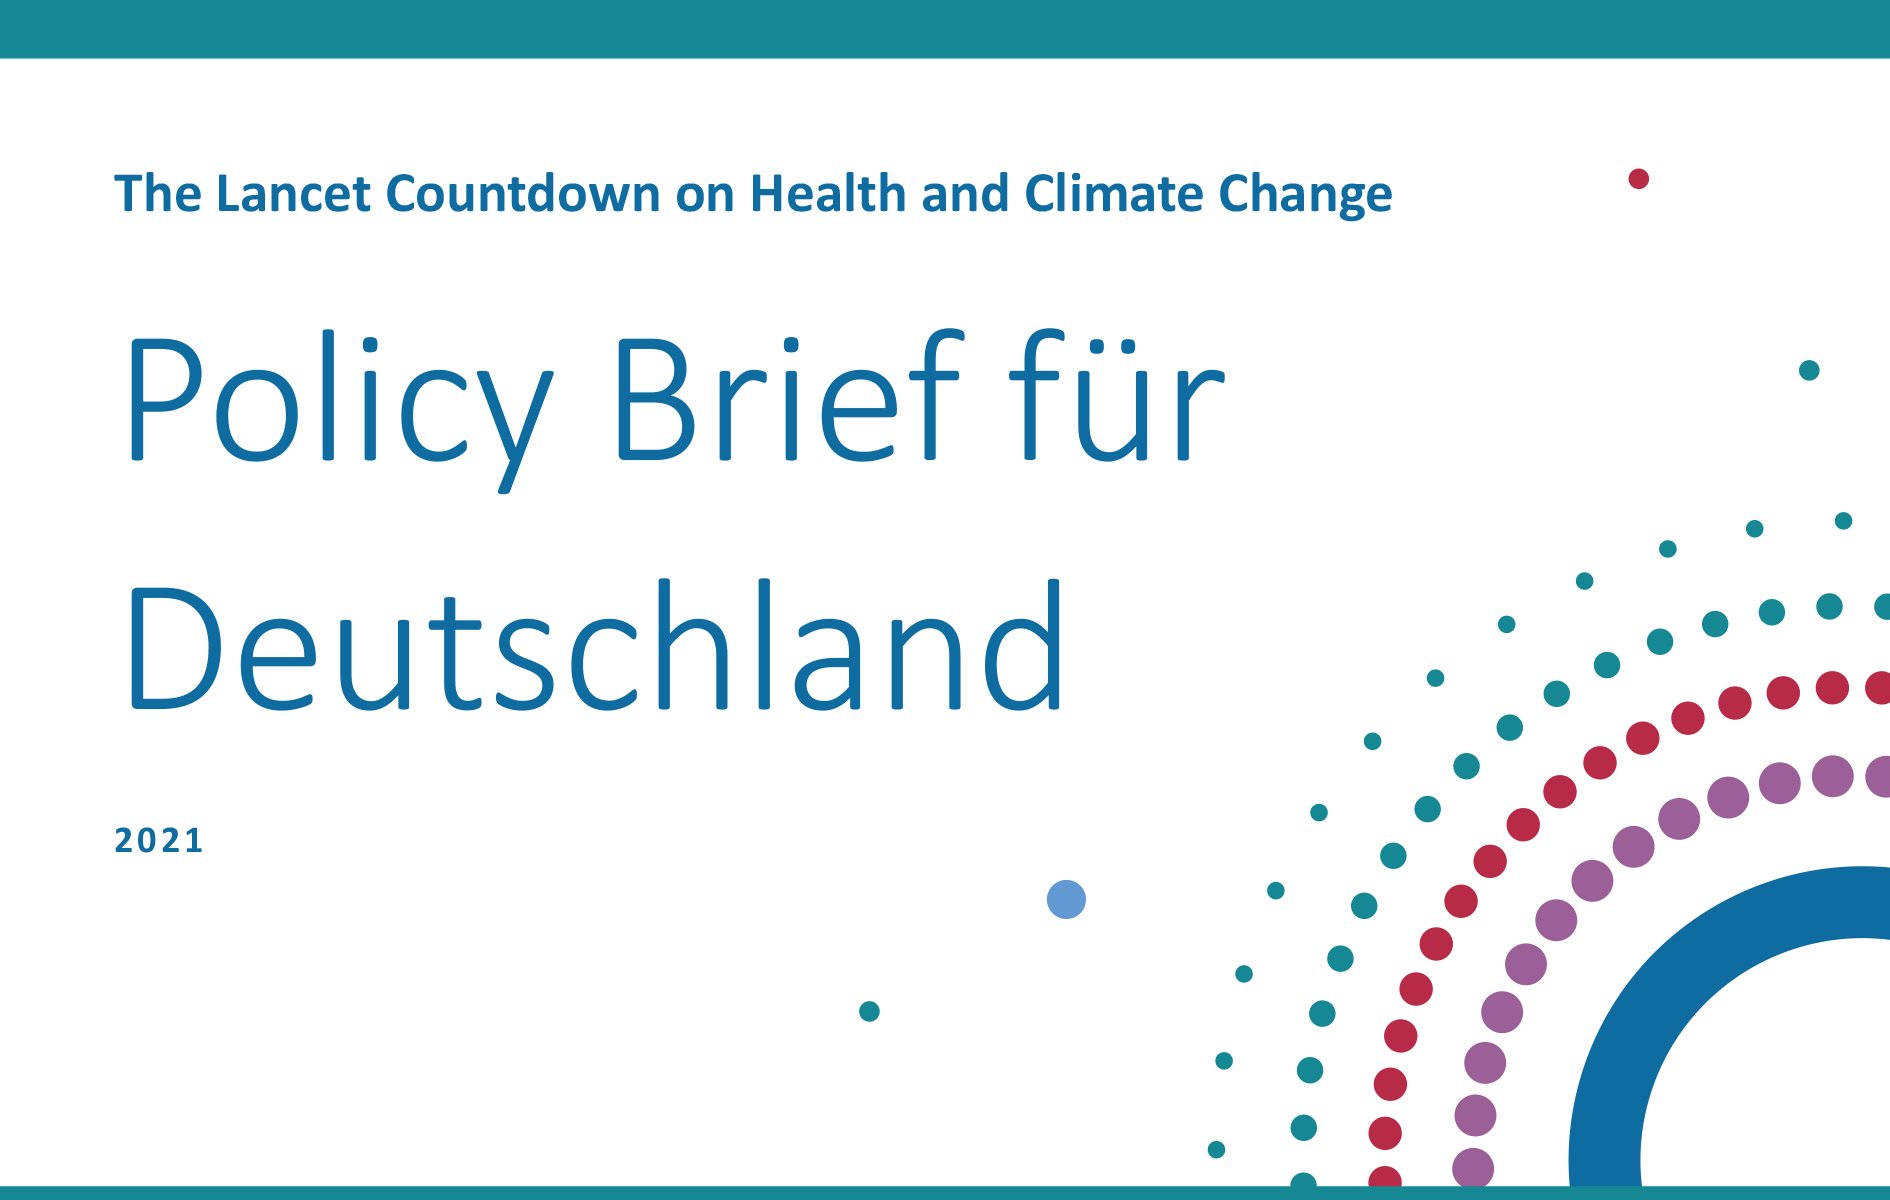 Neuer Lancet Countdown Policy Brief für Deutschland zeigt weiter erheblichen Handlungsbedarf